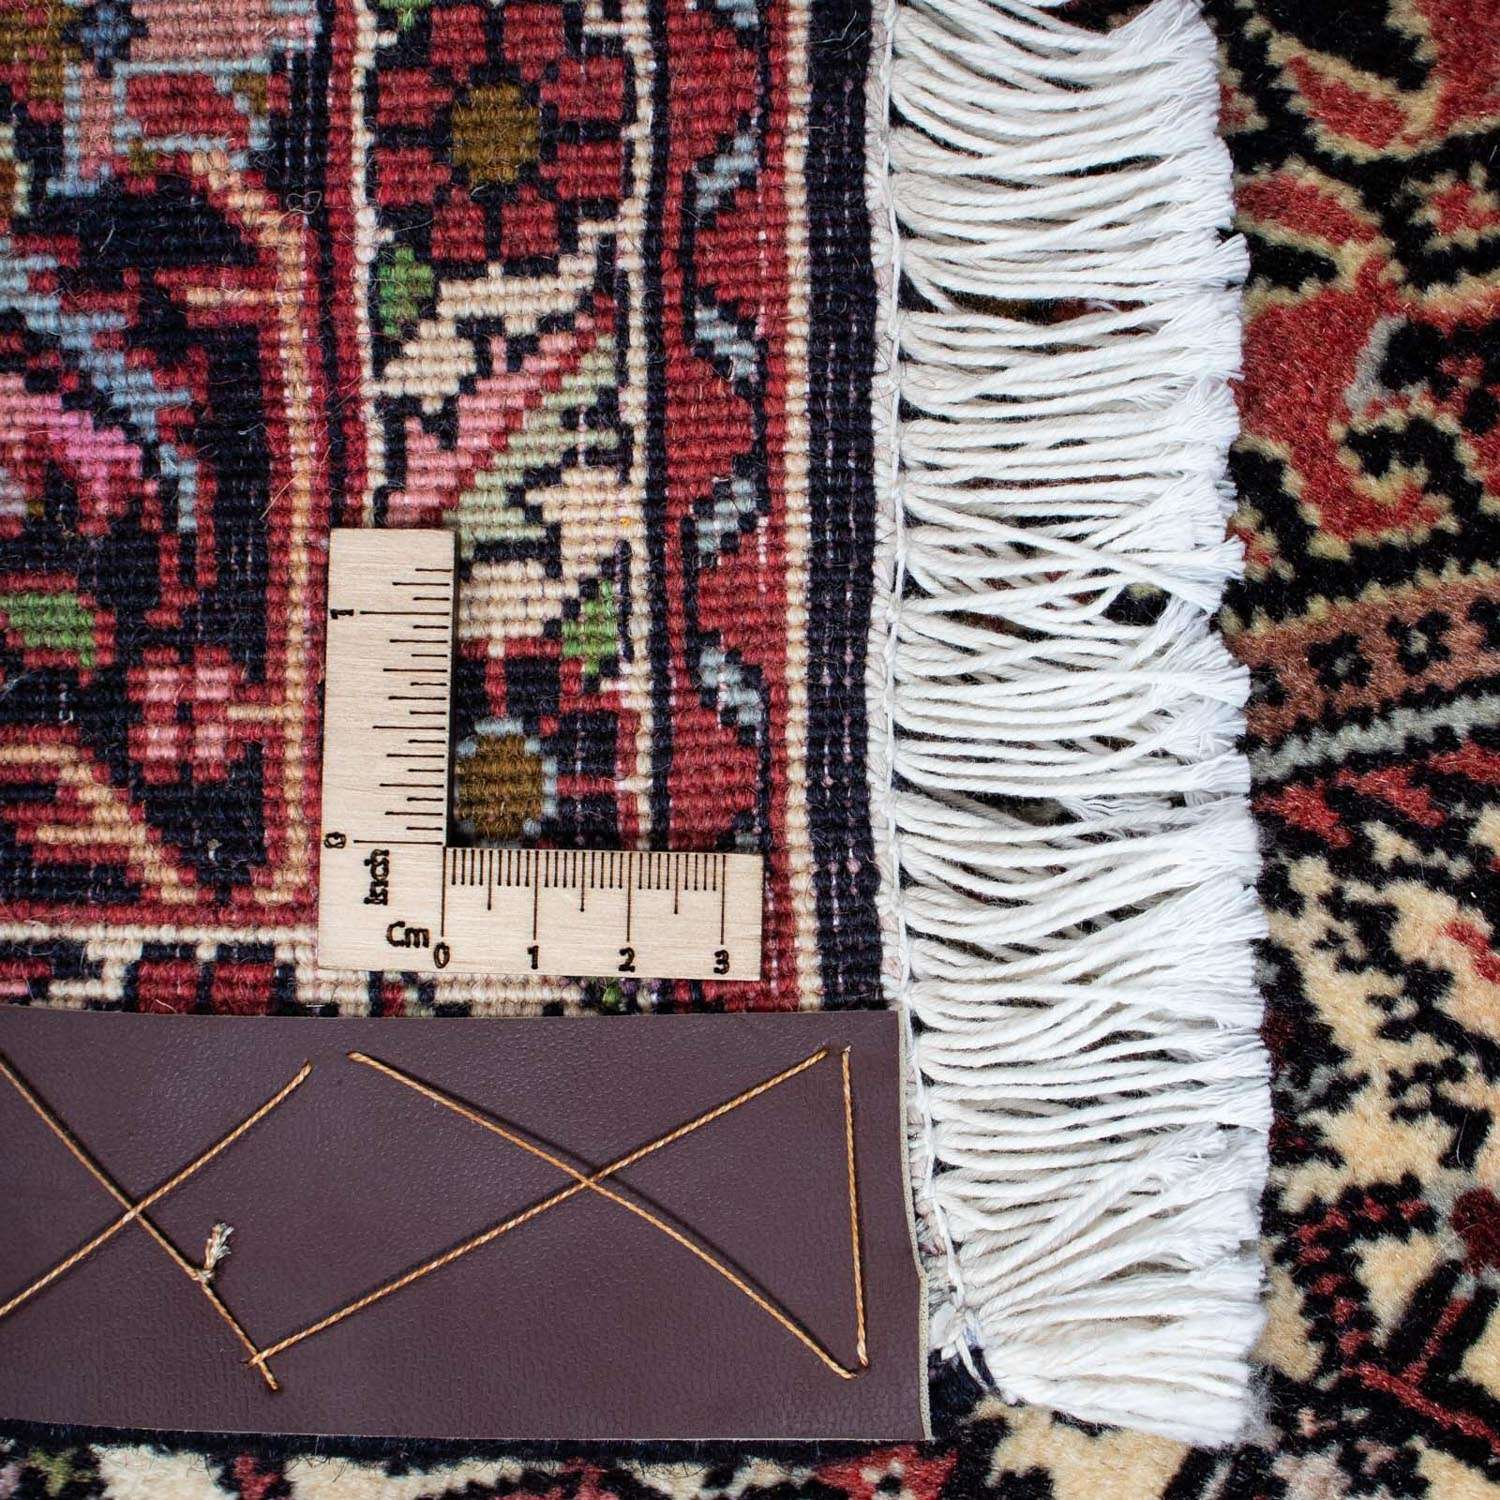 Perzisch tapijt - Bijar - 227 x 137 cm - rood